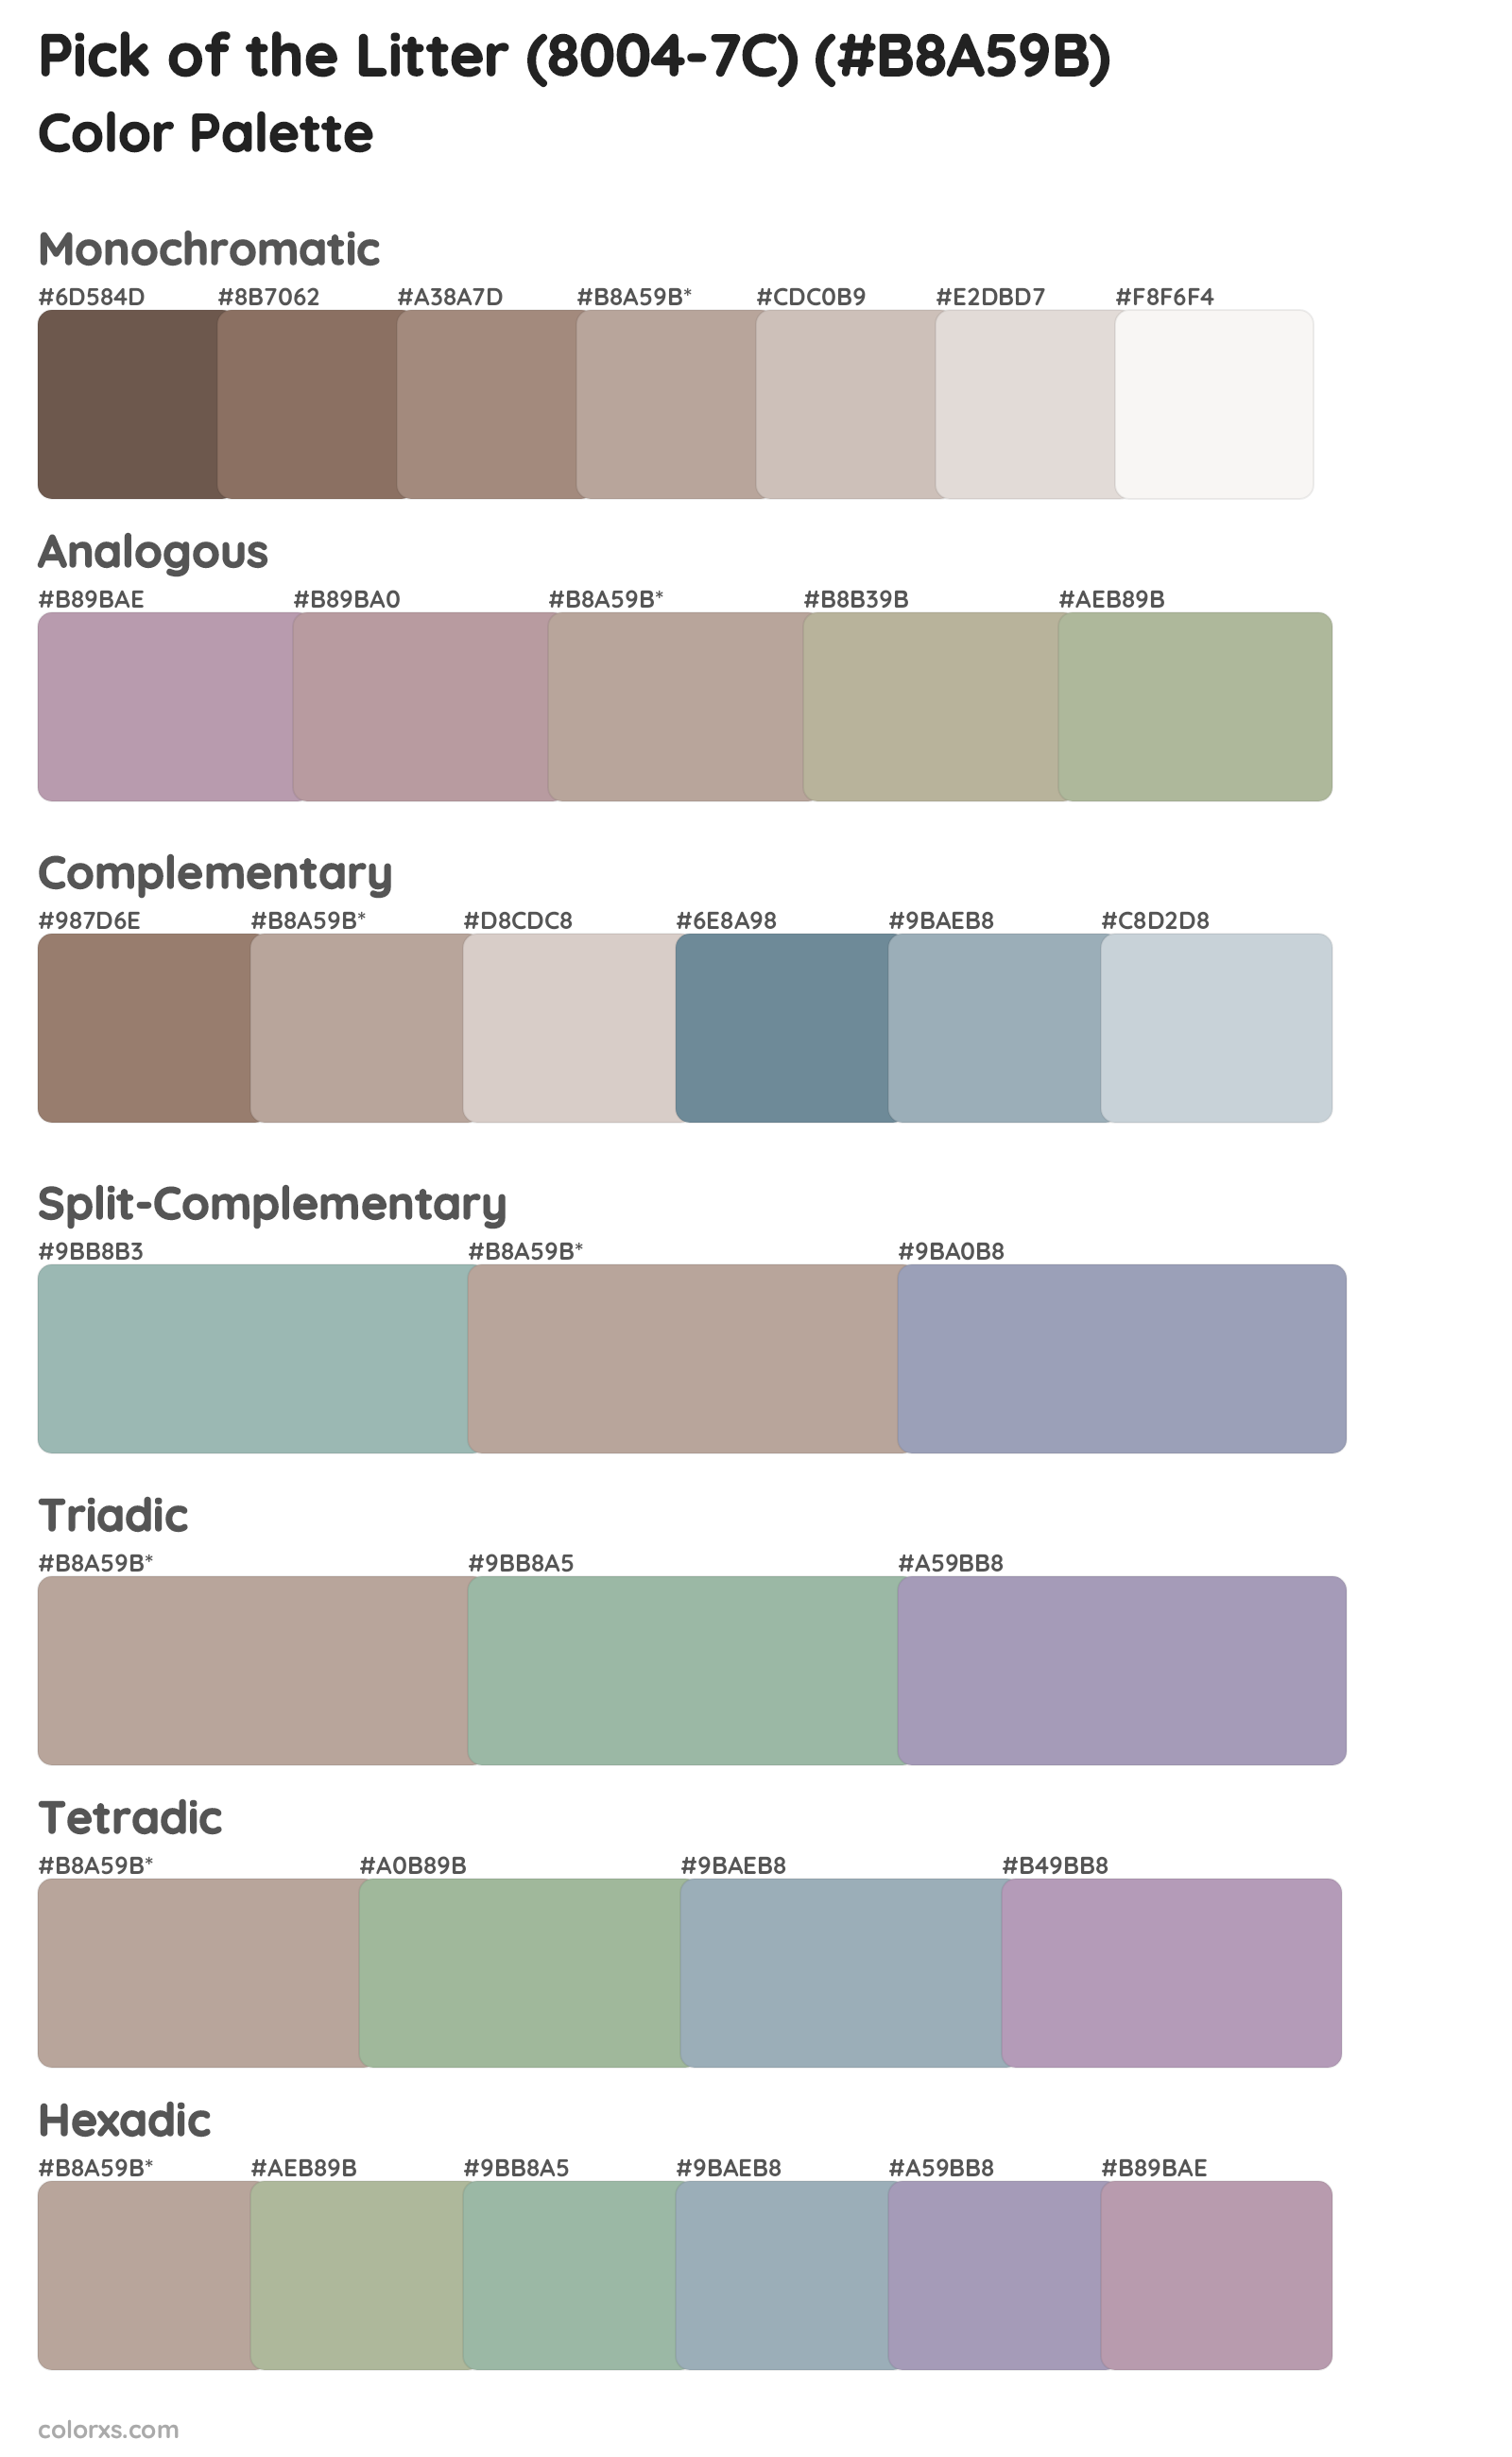 Pick of the Litter (8004-7C) Color Scheme Palettes